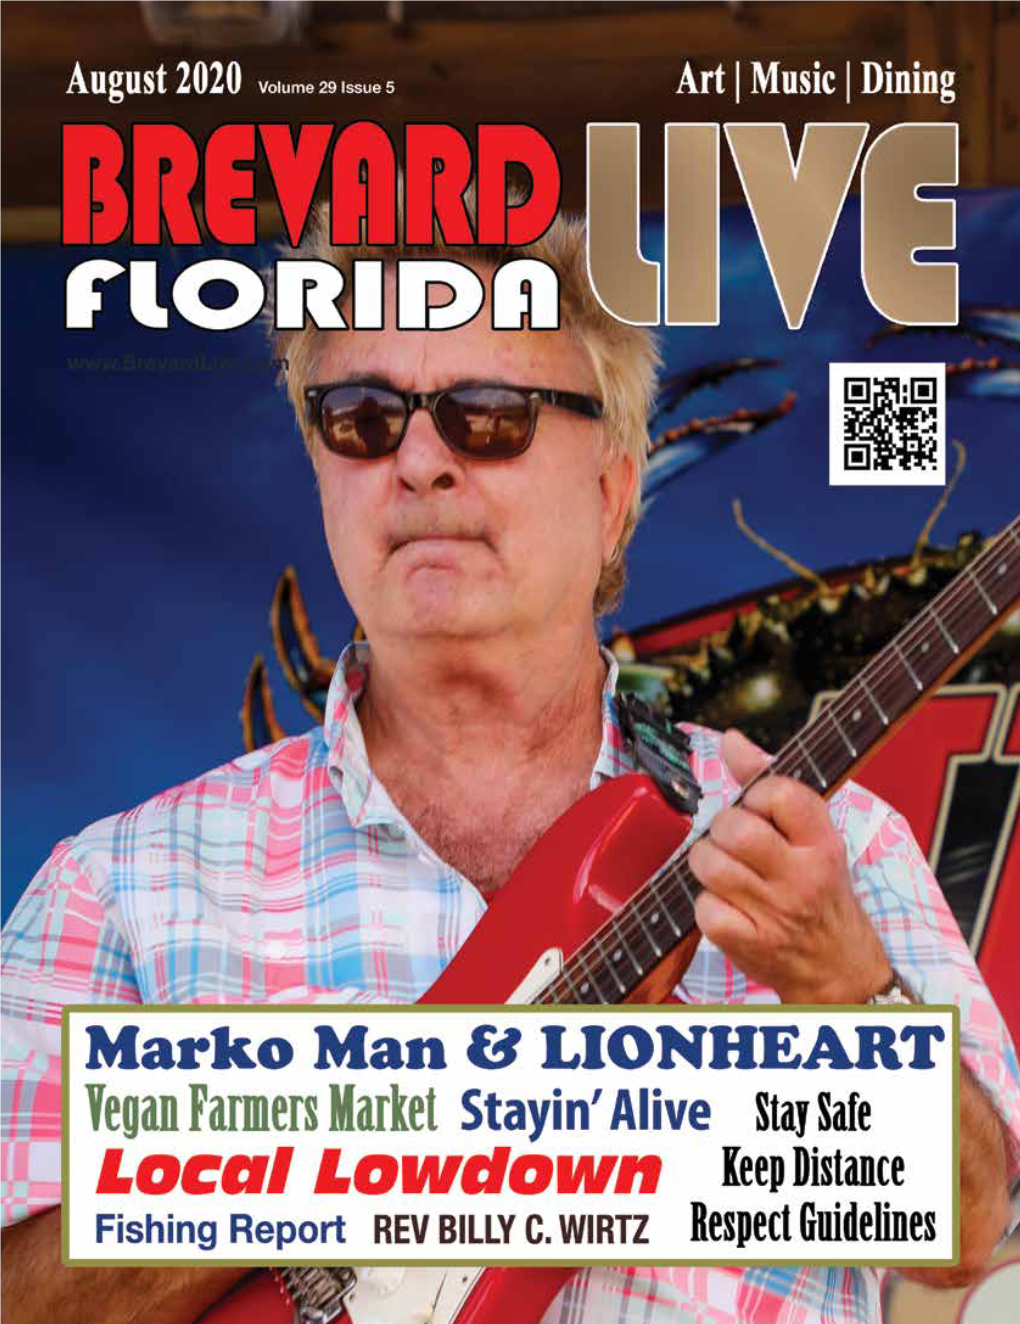 Brevard Live Live August 2020 - 1 2 - Brevard Live August 2020 Brevard Live Live August 2020 - 3 4 - Brevard Live August 2020